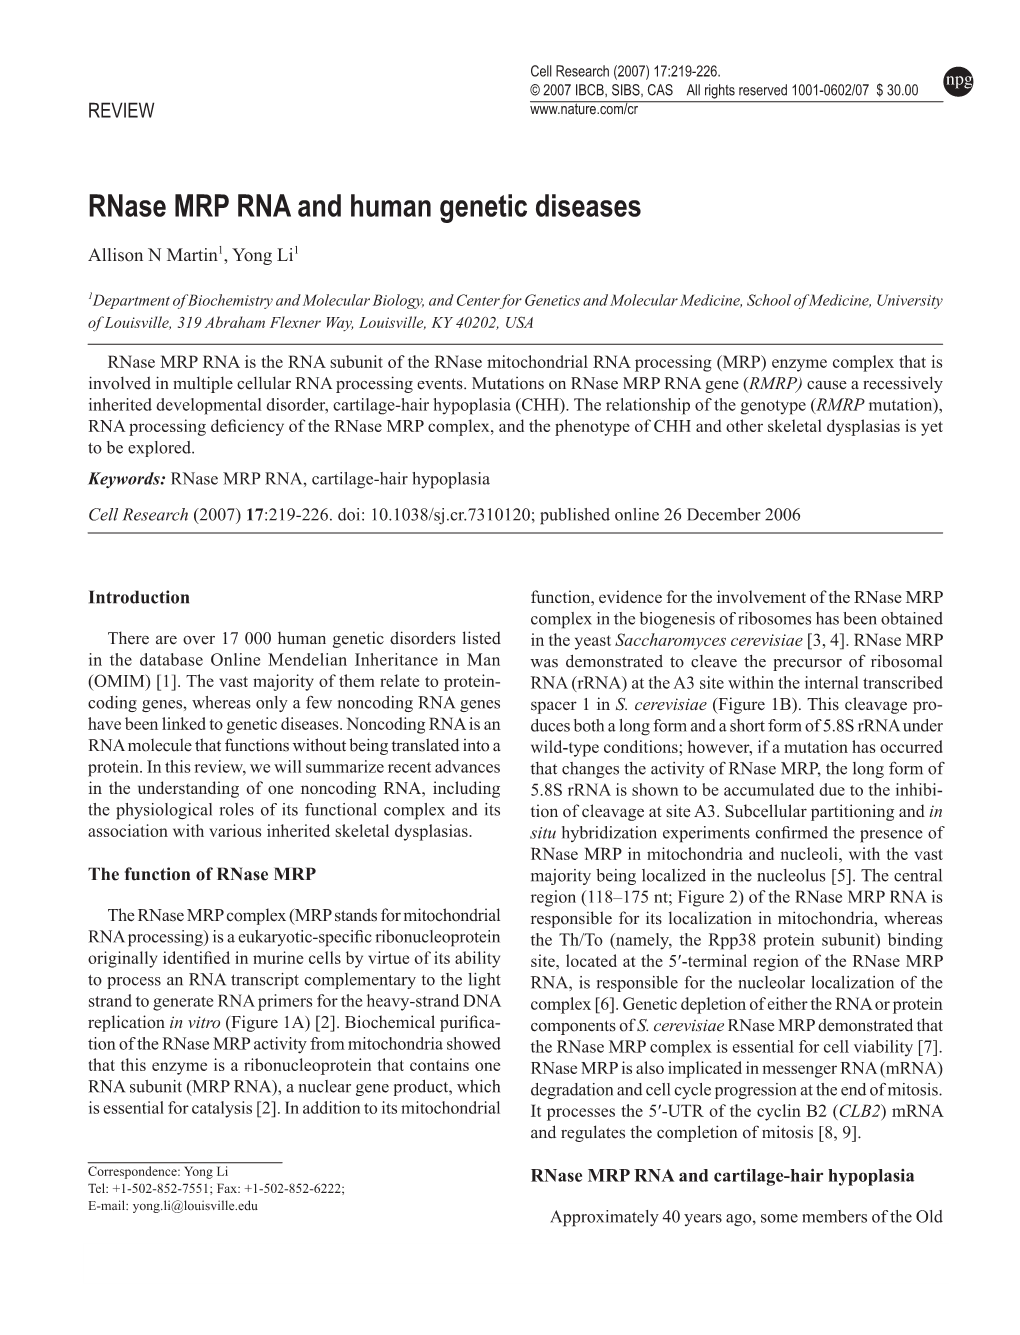 Rnase MRP RNA and Human Genetic Diseases